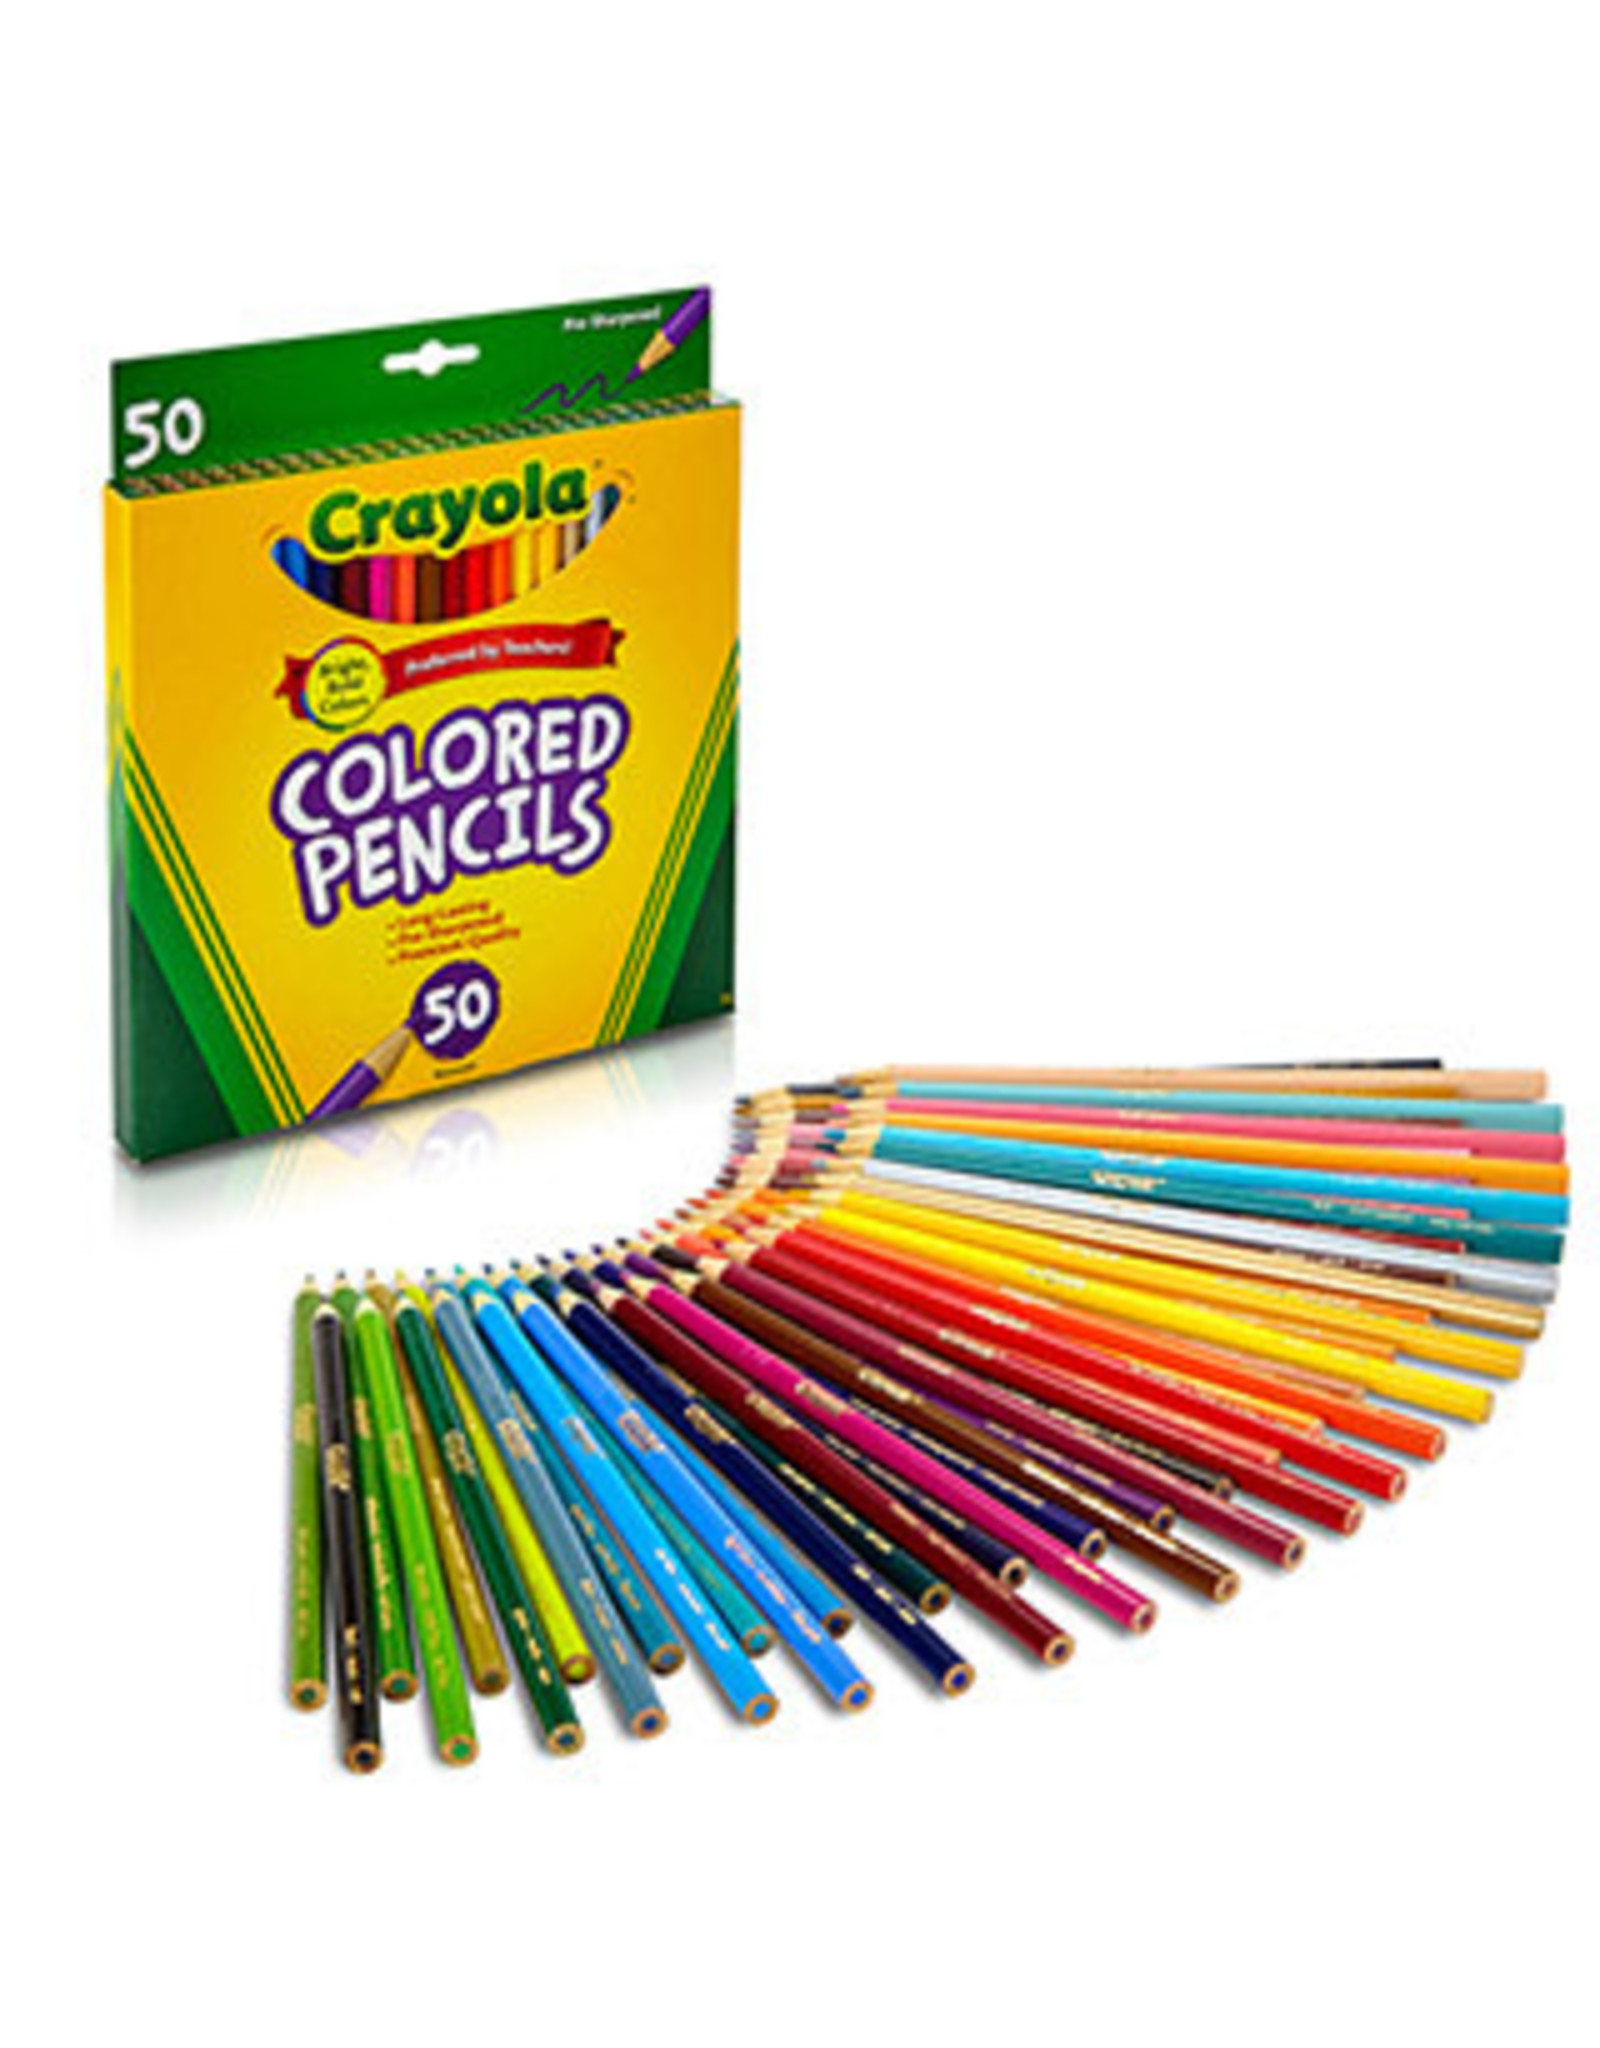 Crayola 50 ct. Colored Pencils